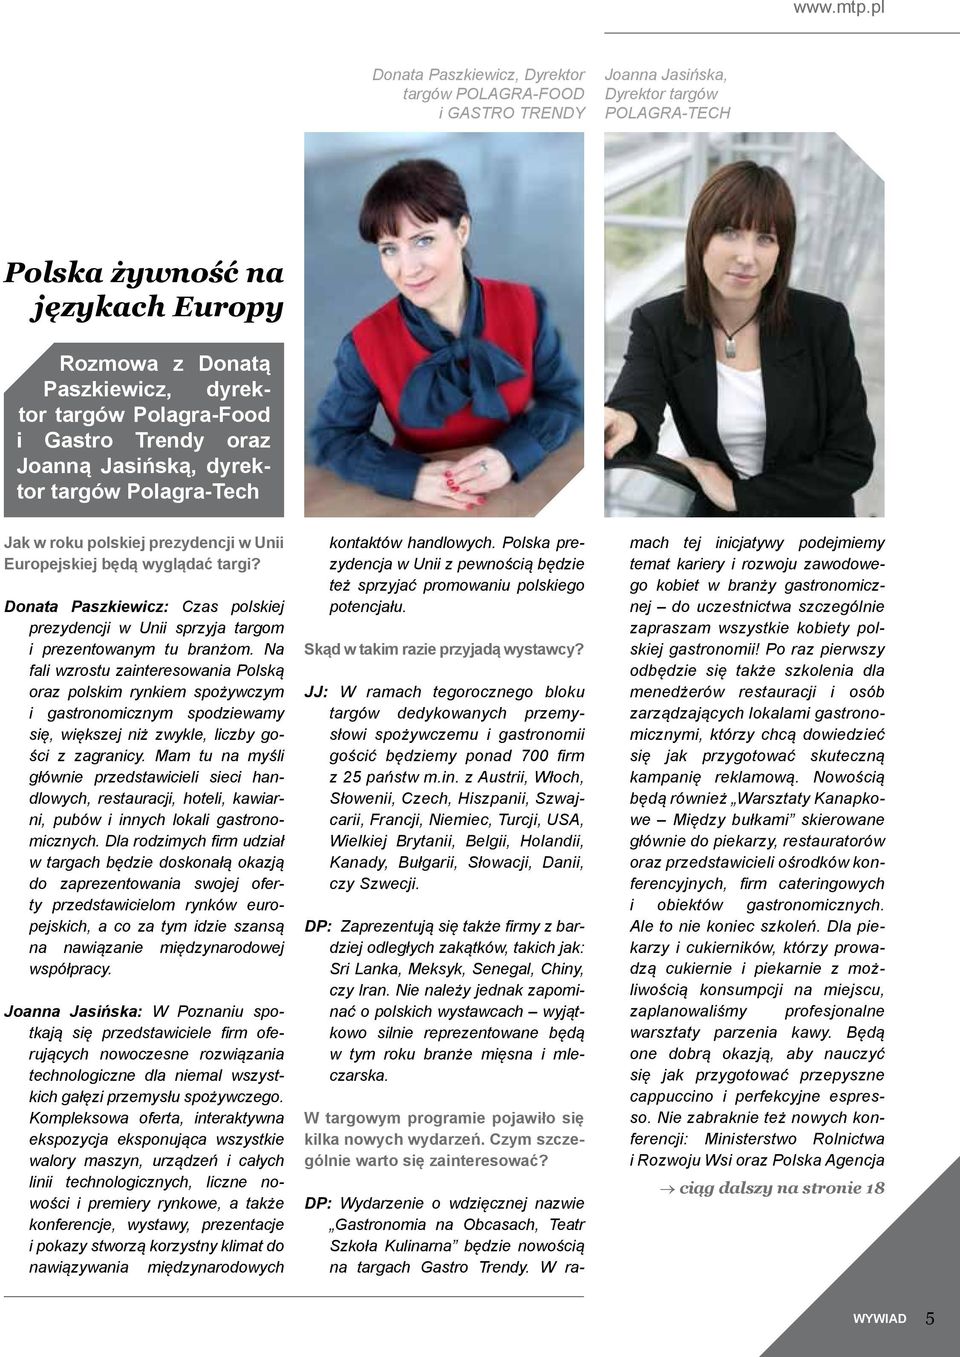 Polagra-Food i Gastro Trendy oraz Joanną Jasińską, dyrektor targów Polagra-Tech Jak w roku polskiej prezydencji w Unii Europejskiej będą wyglądać targi?